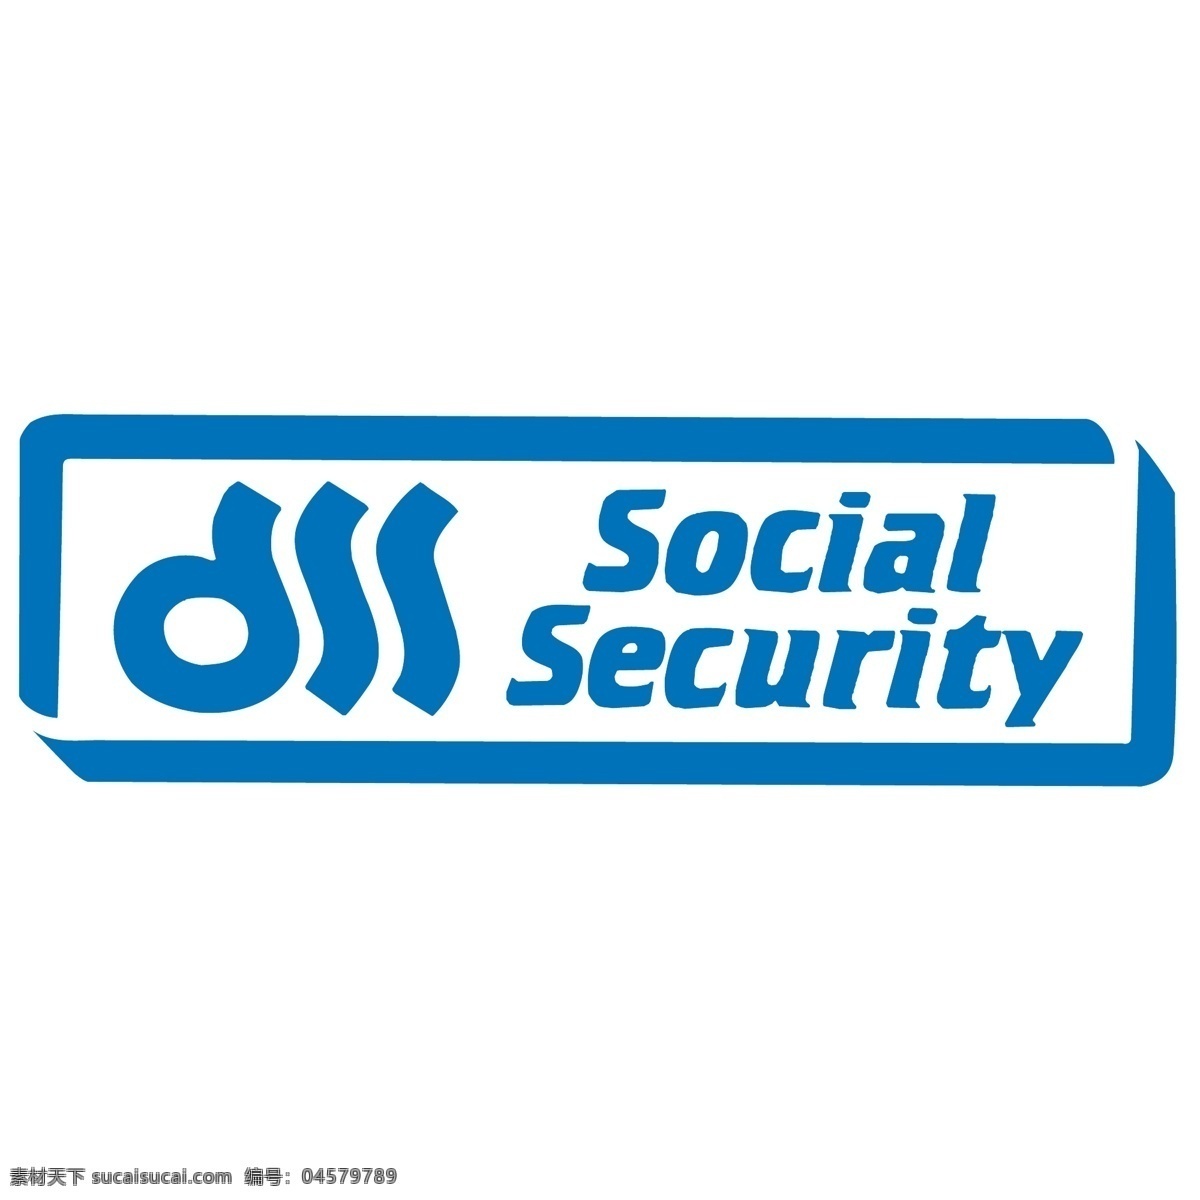 社会保障 自由 社会 安全 标识 标志 psd源文件 logo设计